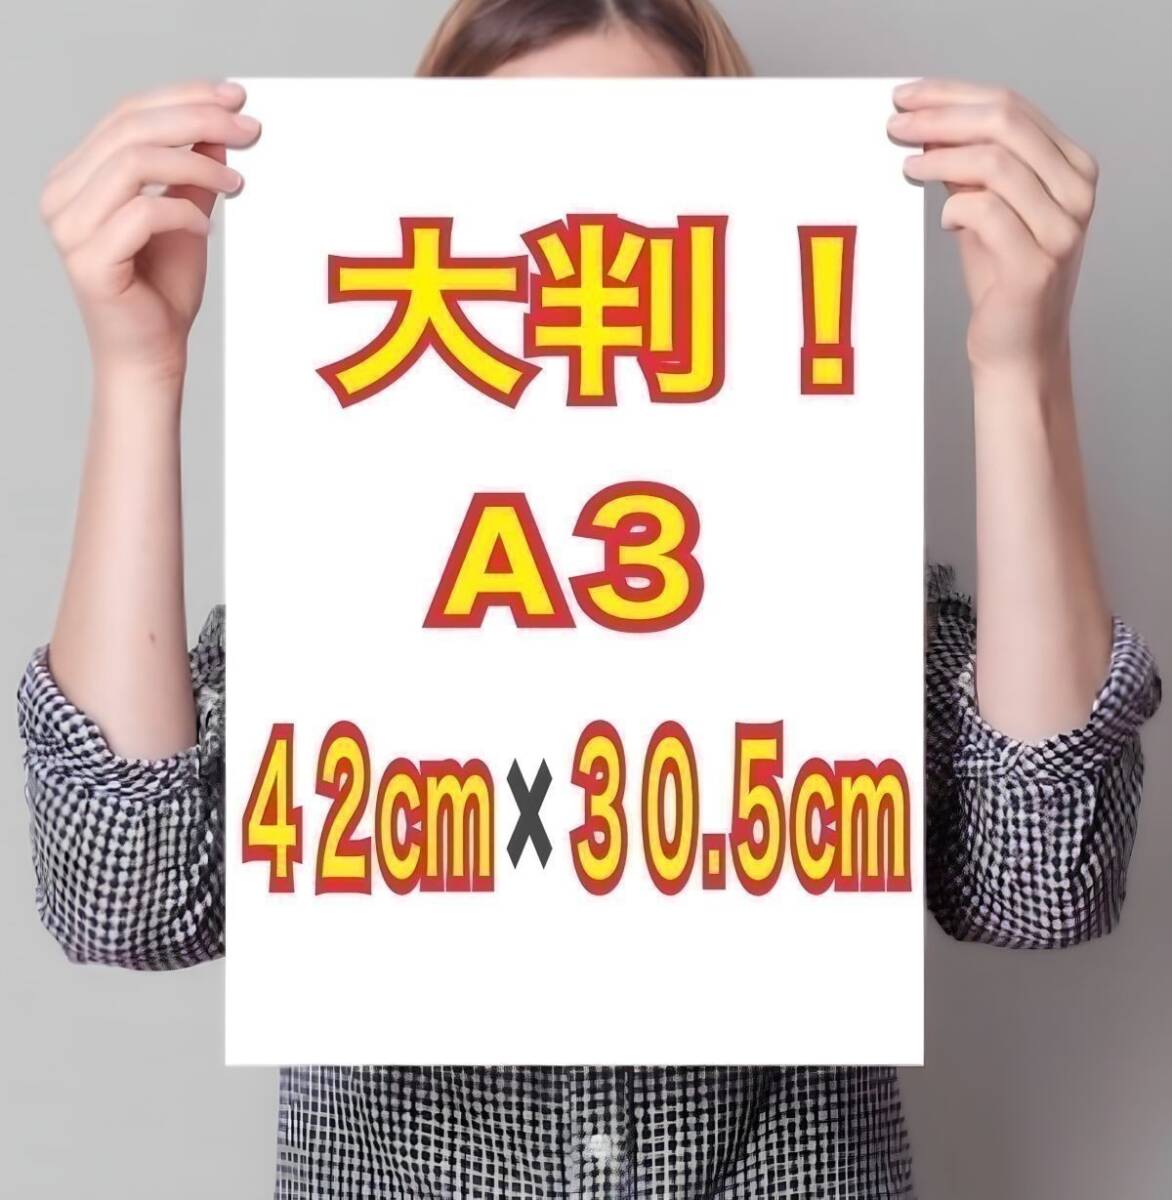  иностранная модель A3 постер супер глянец большой размер 42cm×30.5cm! life photograph *927* Junior идол в натуральную величину способ L